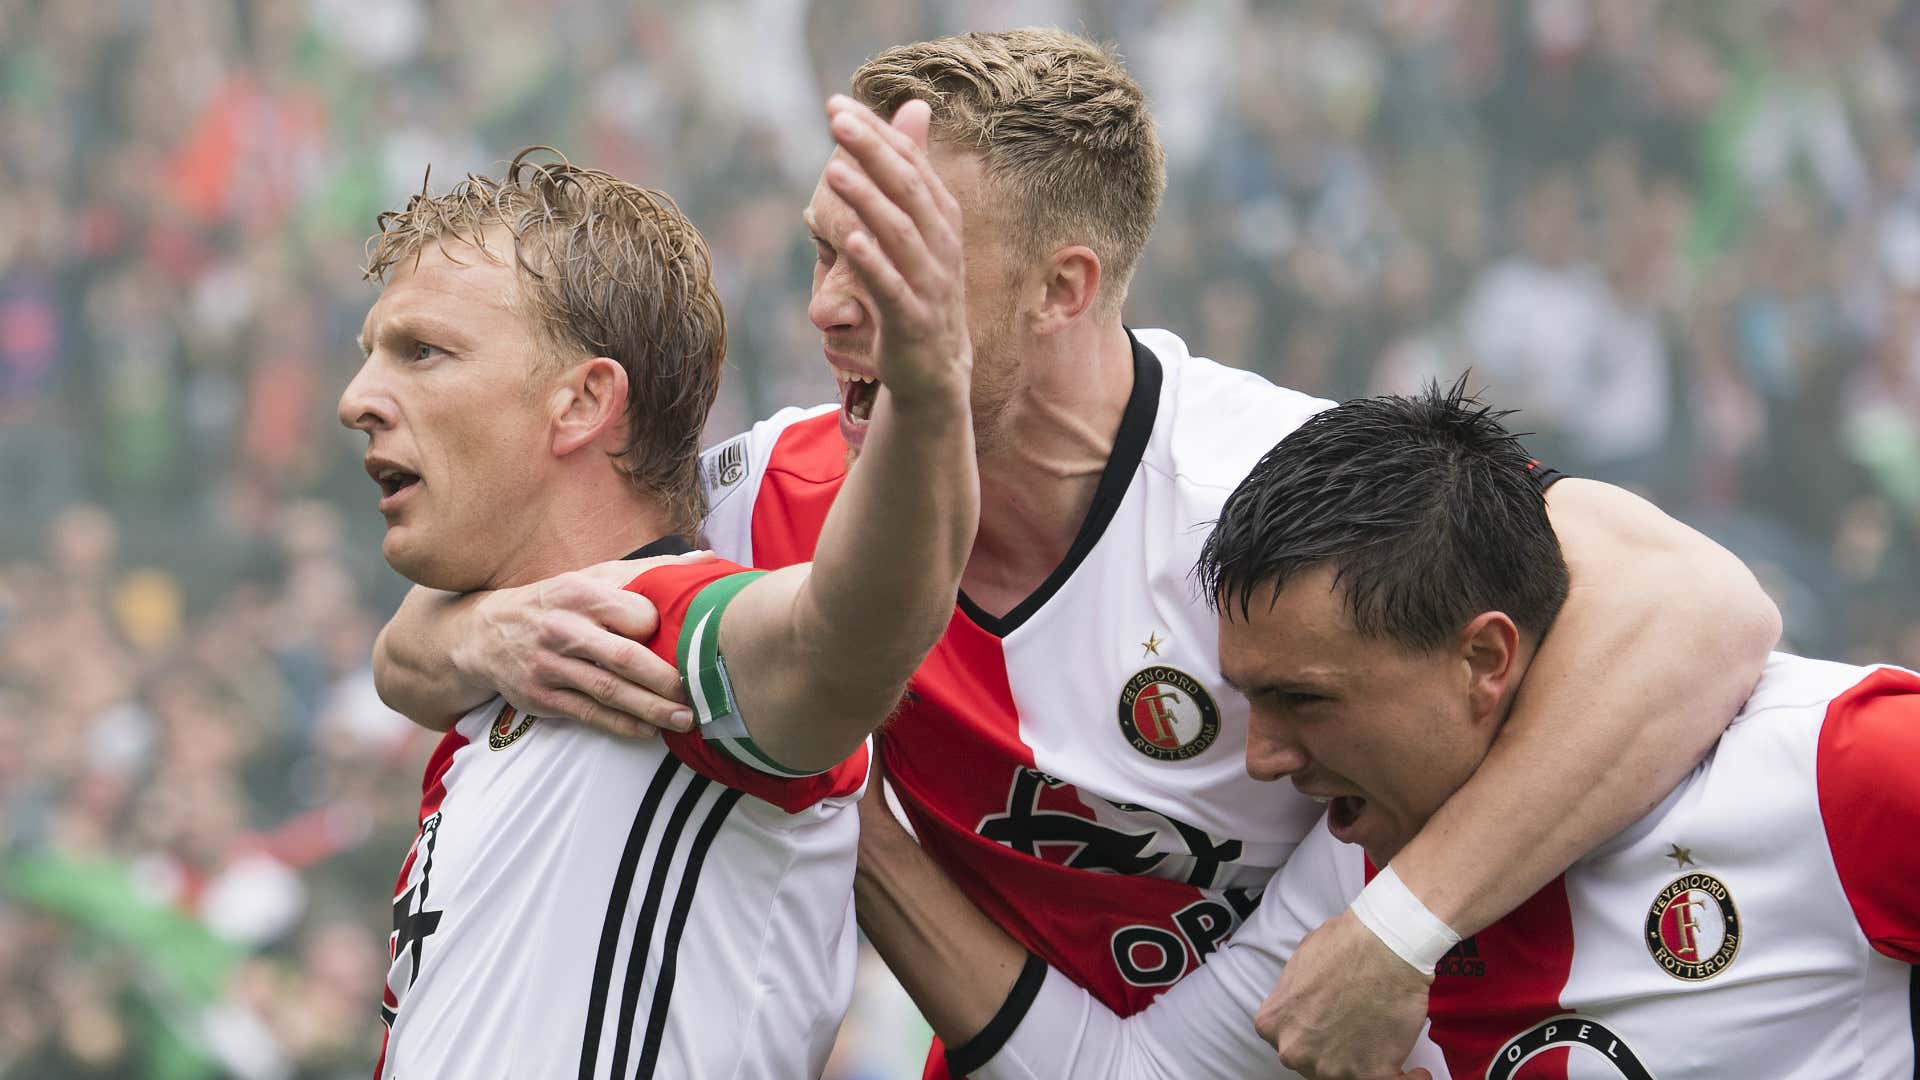 Dirk Kuyt, Feyenoord vs. Heracles Almelo, 05142017